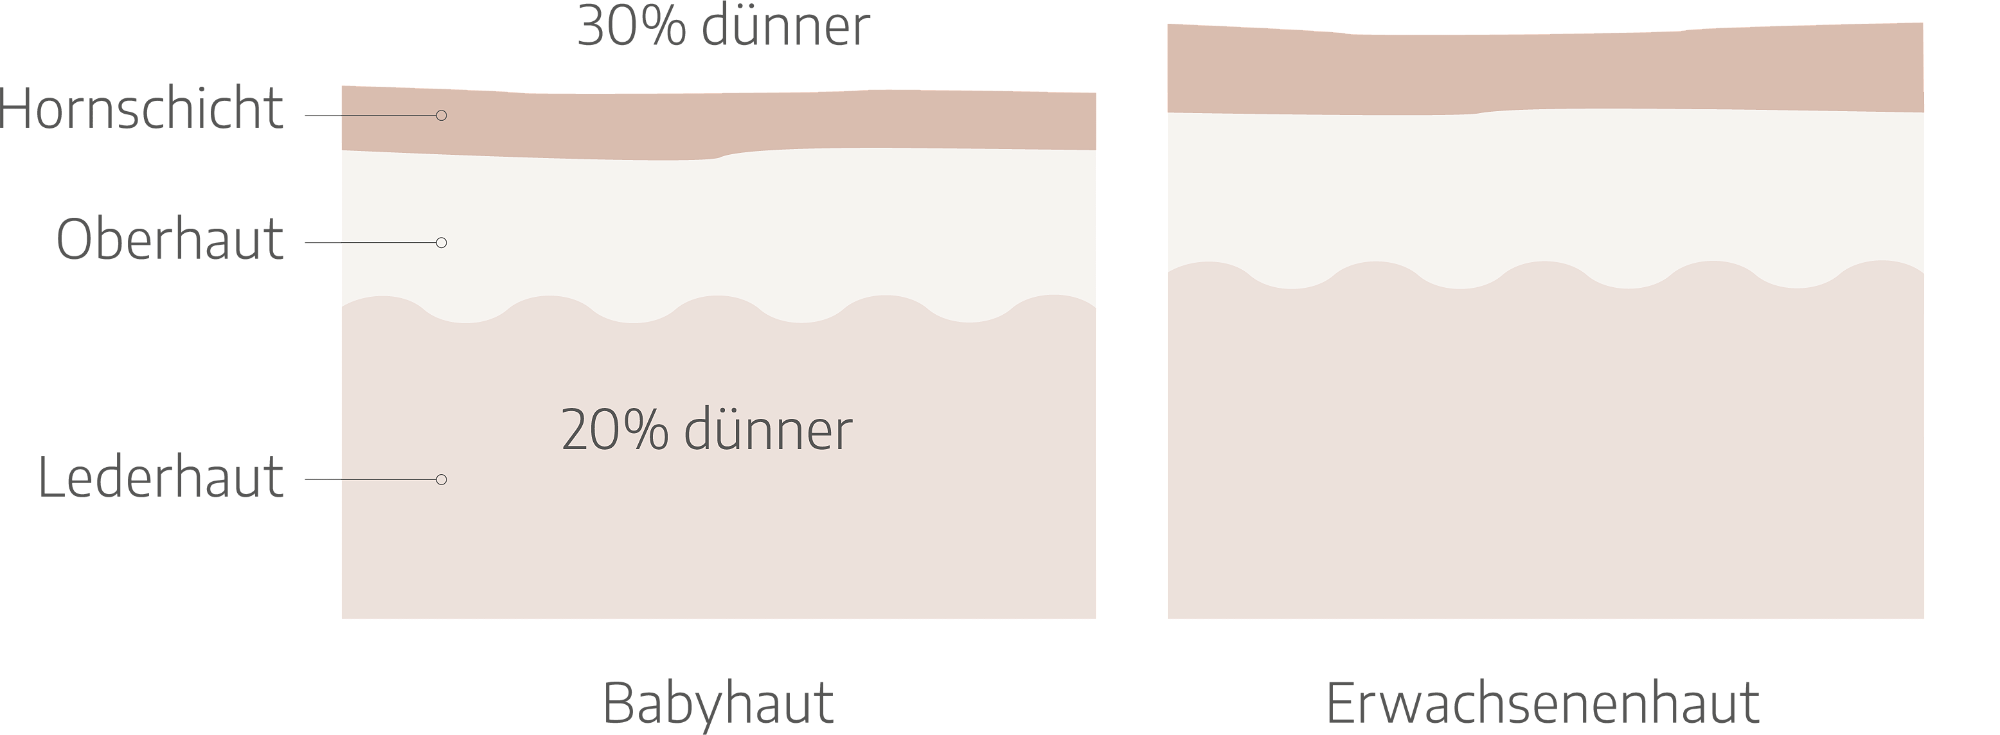 Im Vergleich zu Erwachsenenhaut sind Hornschicht und Oberhaut des Babys deutlich durchlässiger und die Hautschutzbarriere noch nicht ausgebildet